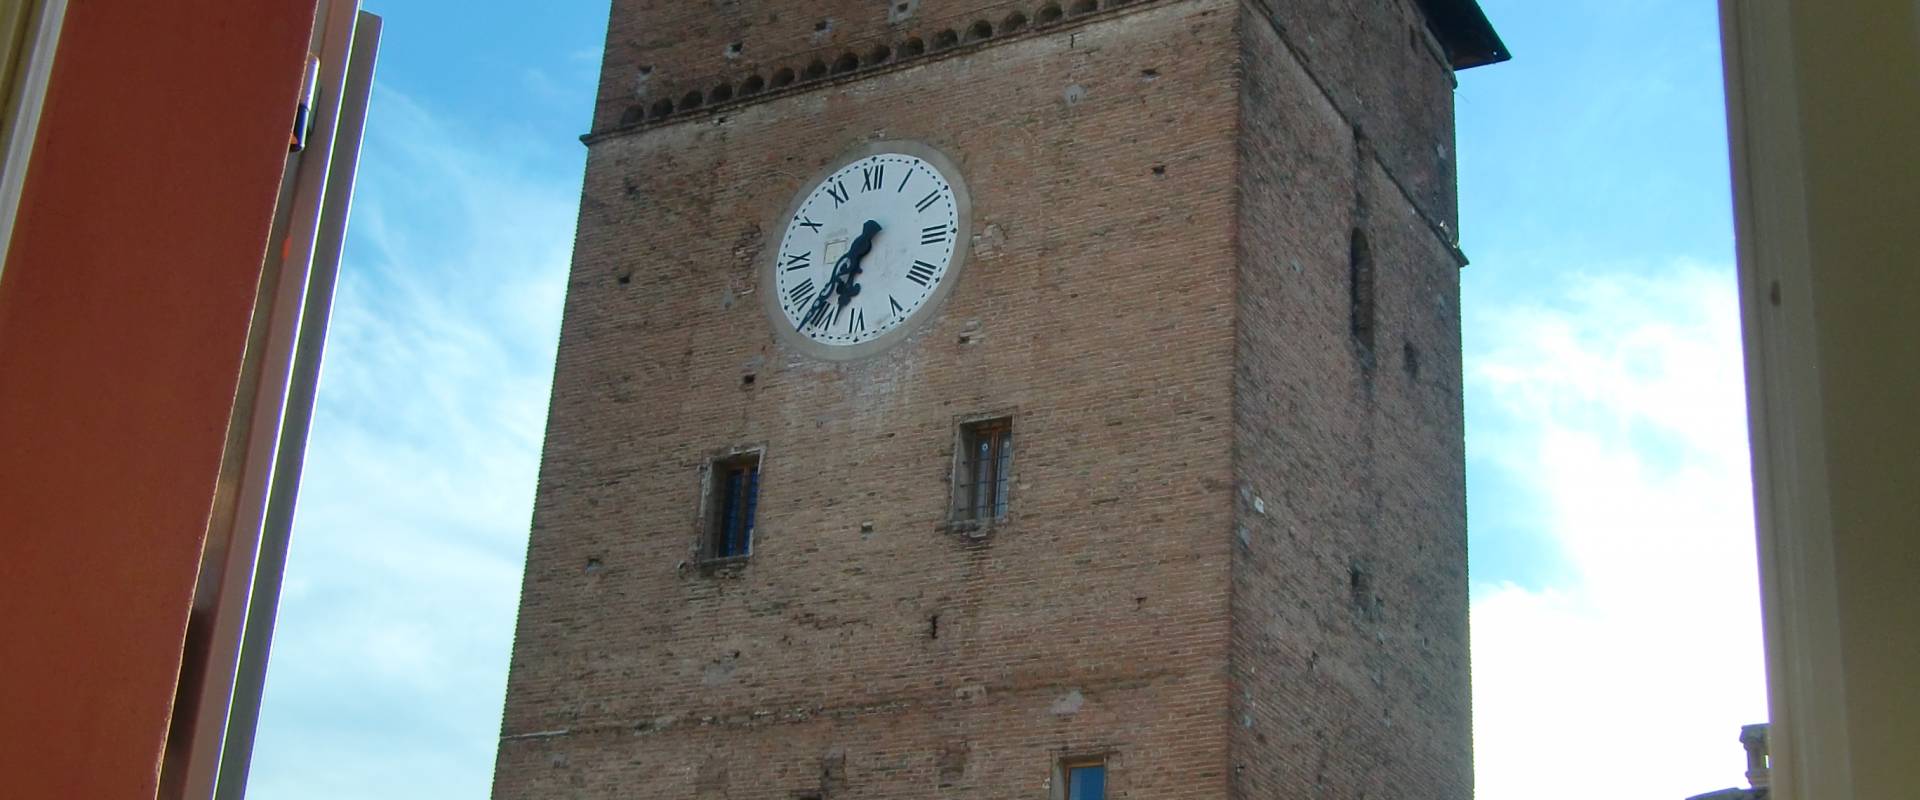 Torre dei Modenesi detta anche torre dell'orologio photo by 52AttilioRighi